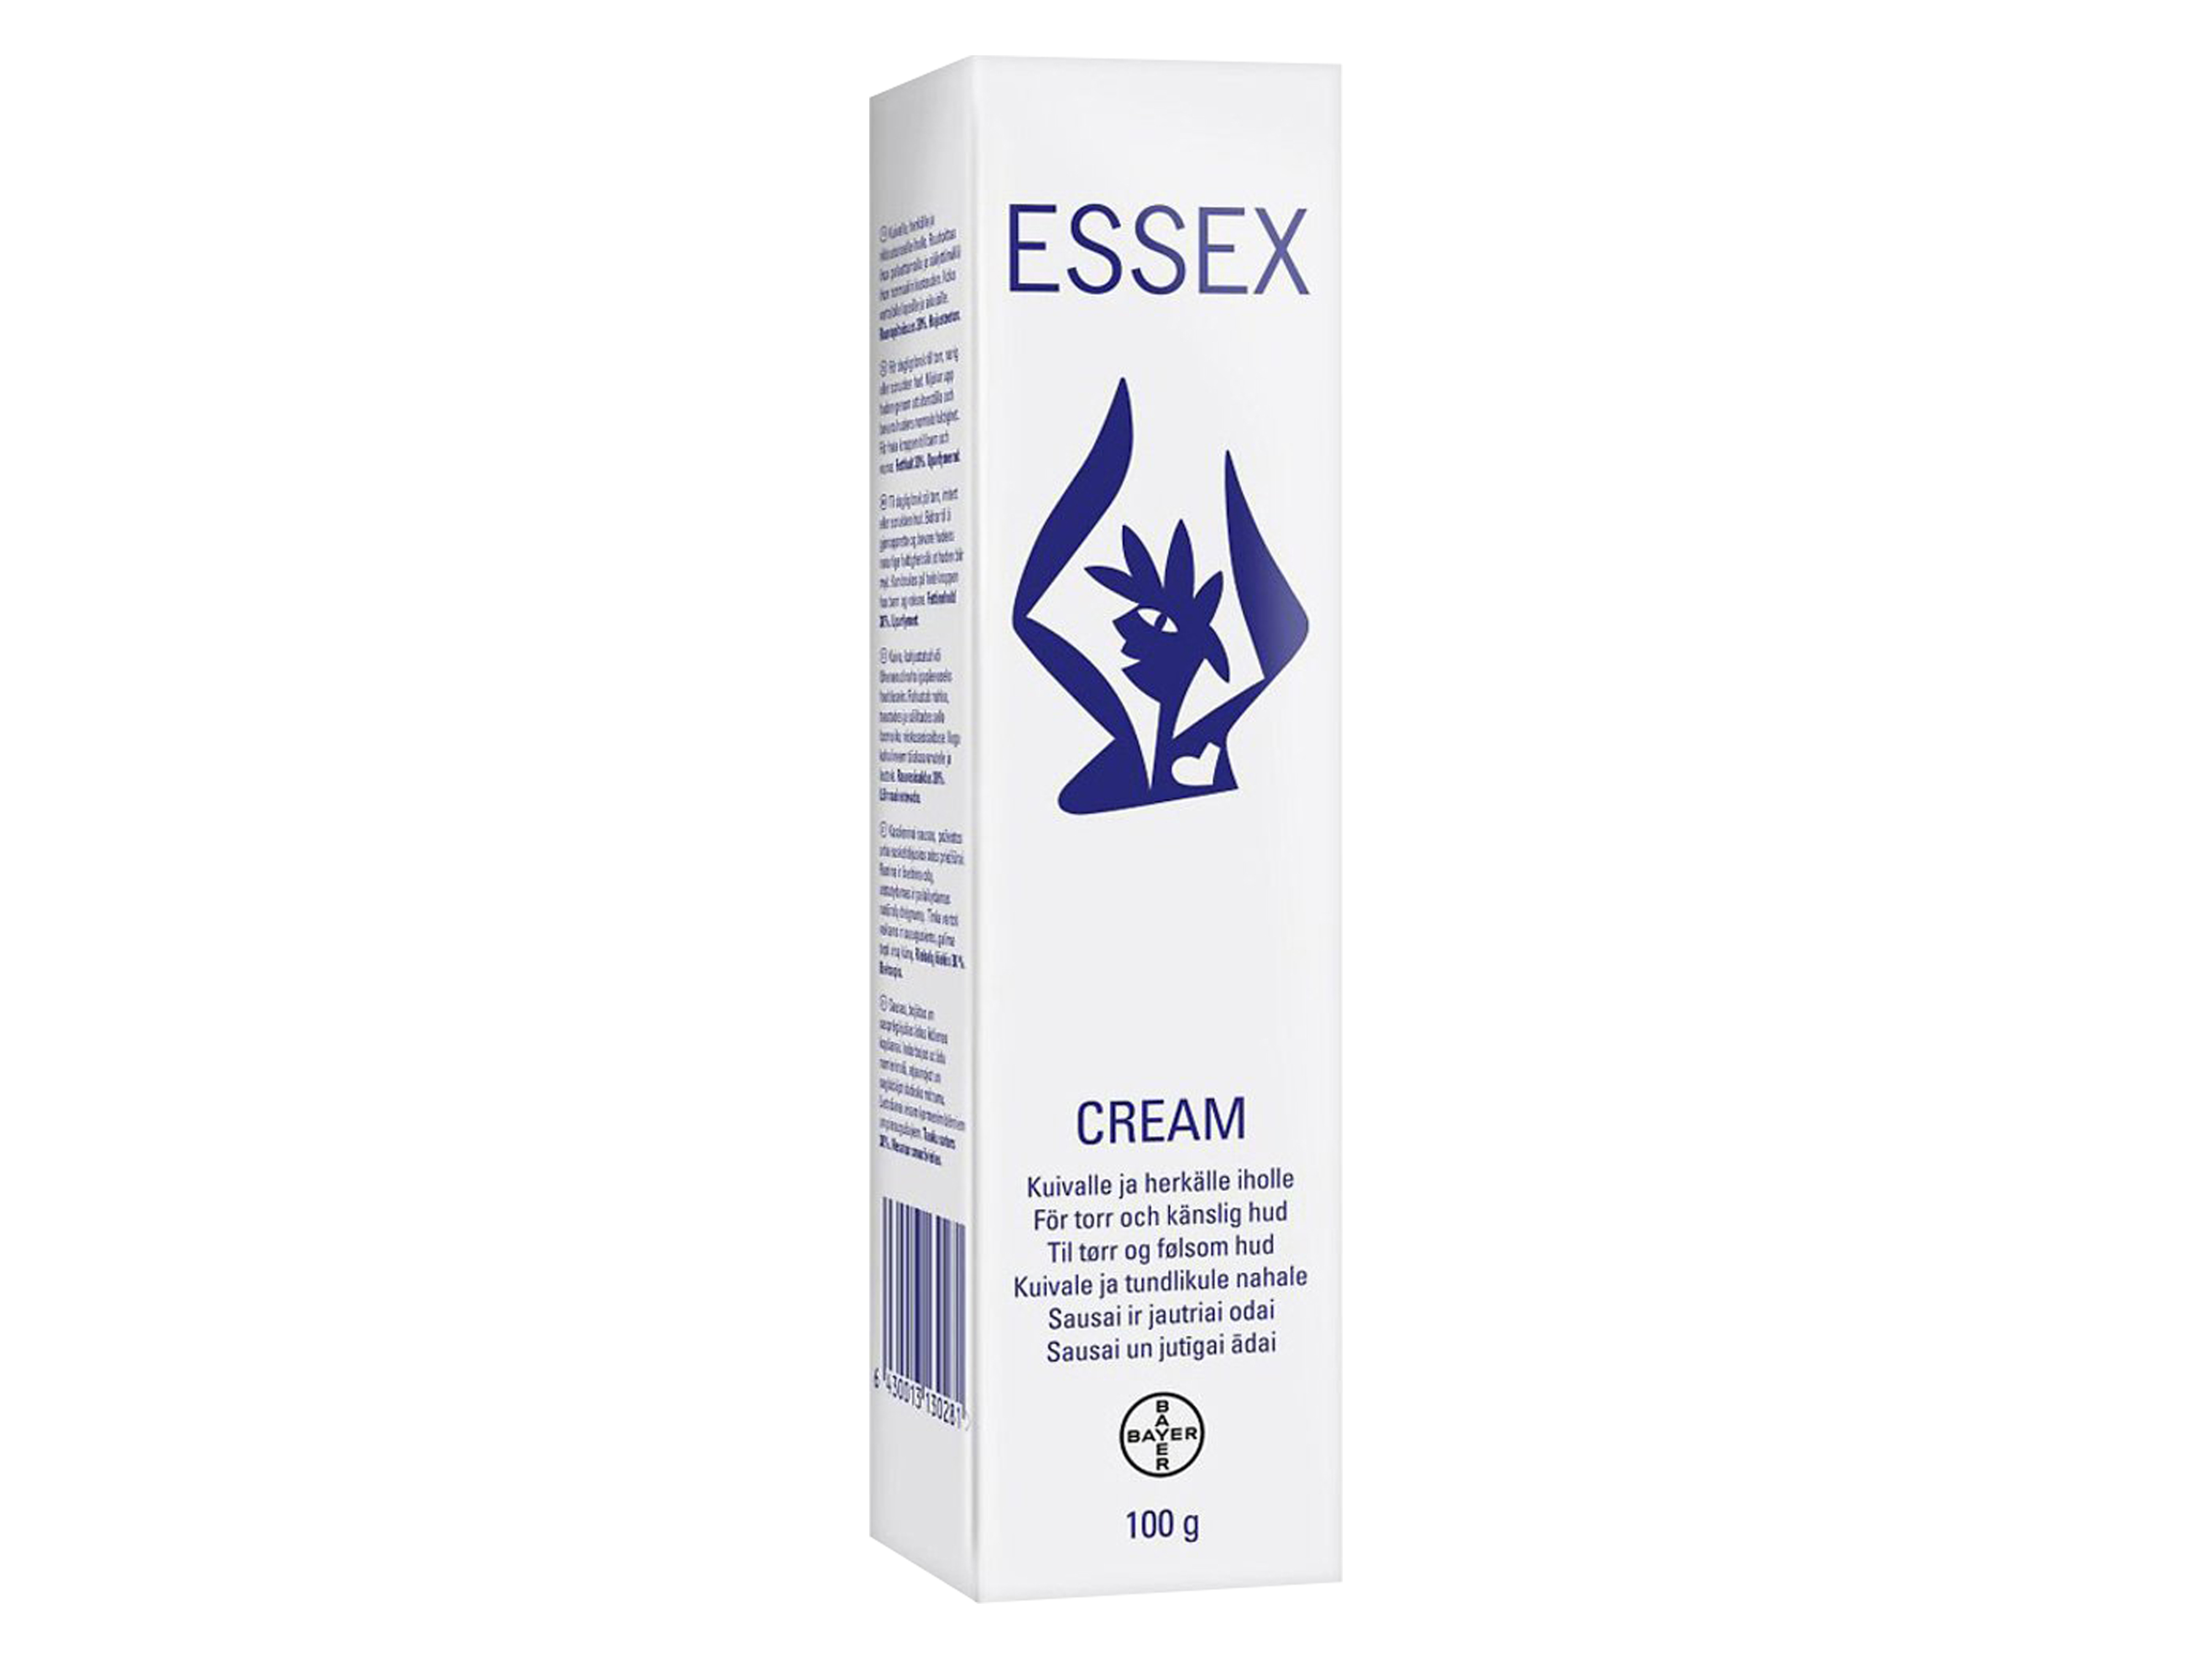 Essex Cream, 100 gram